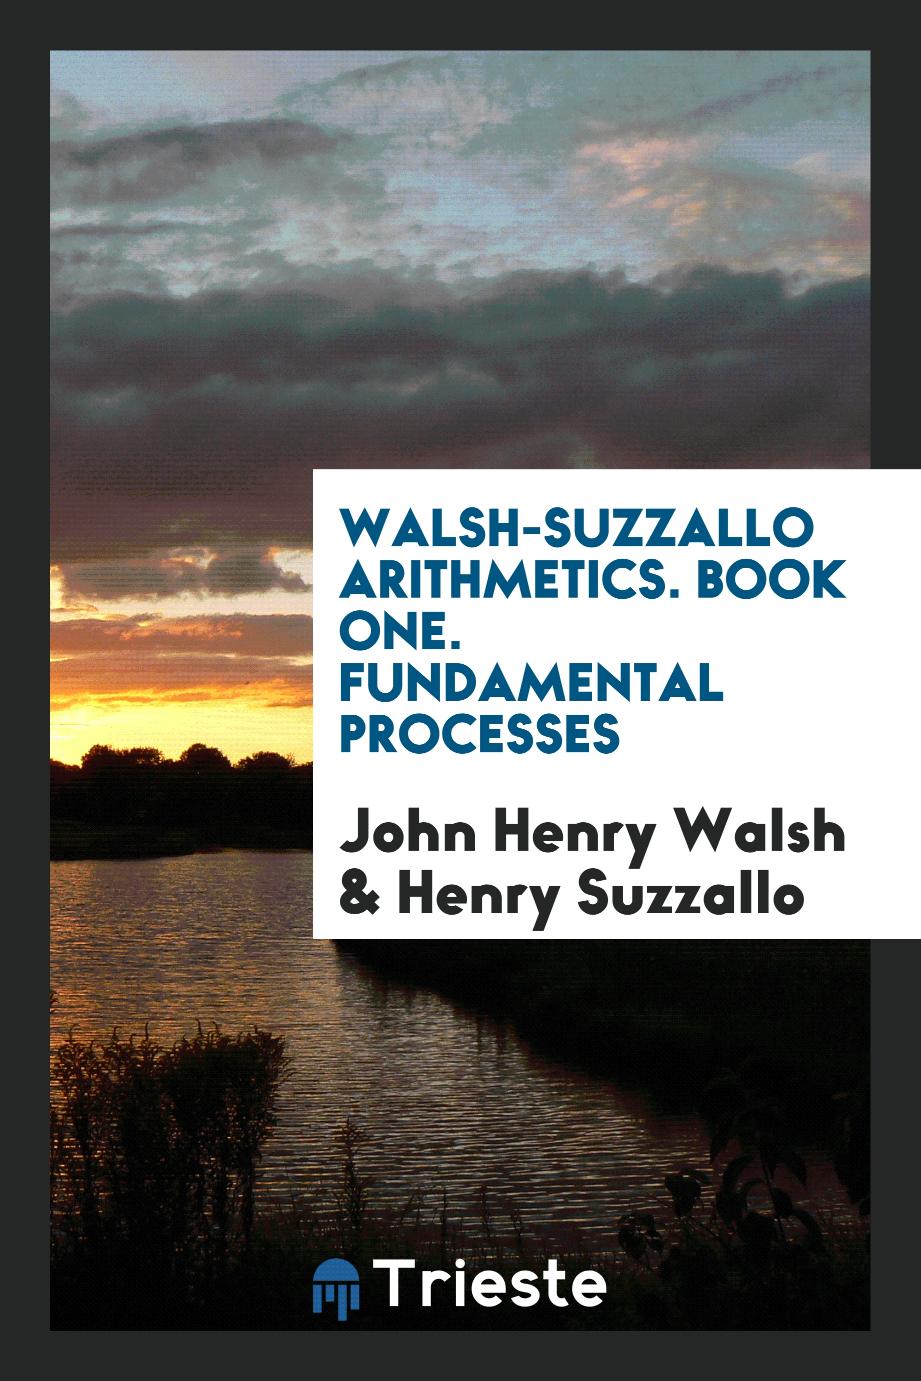 Walsh-Suzzallo arithmetics. Book one. Fundamental processes